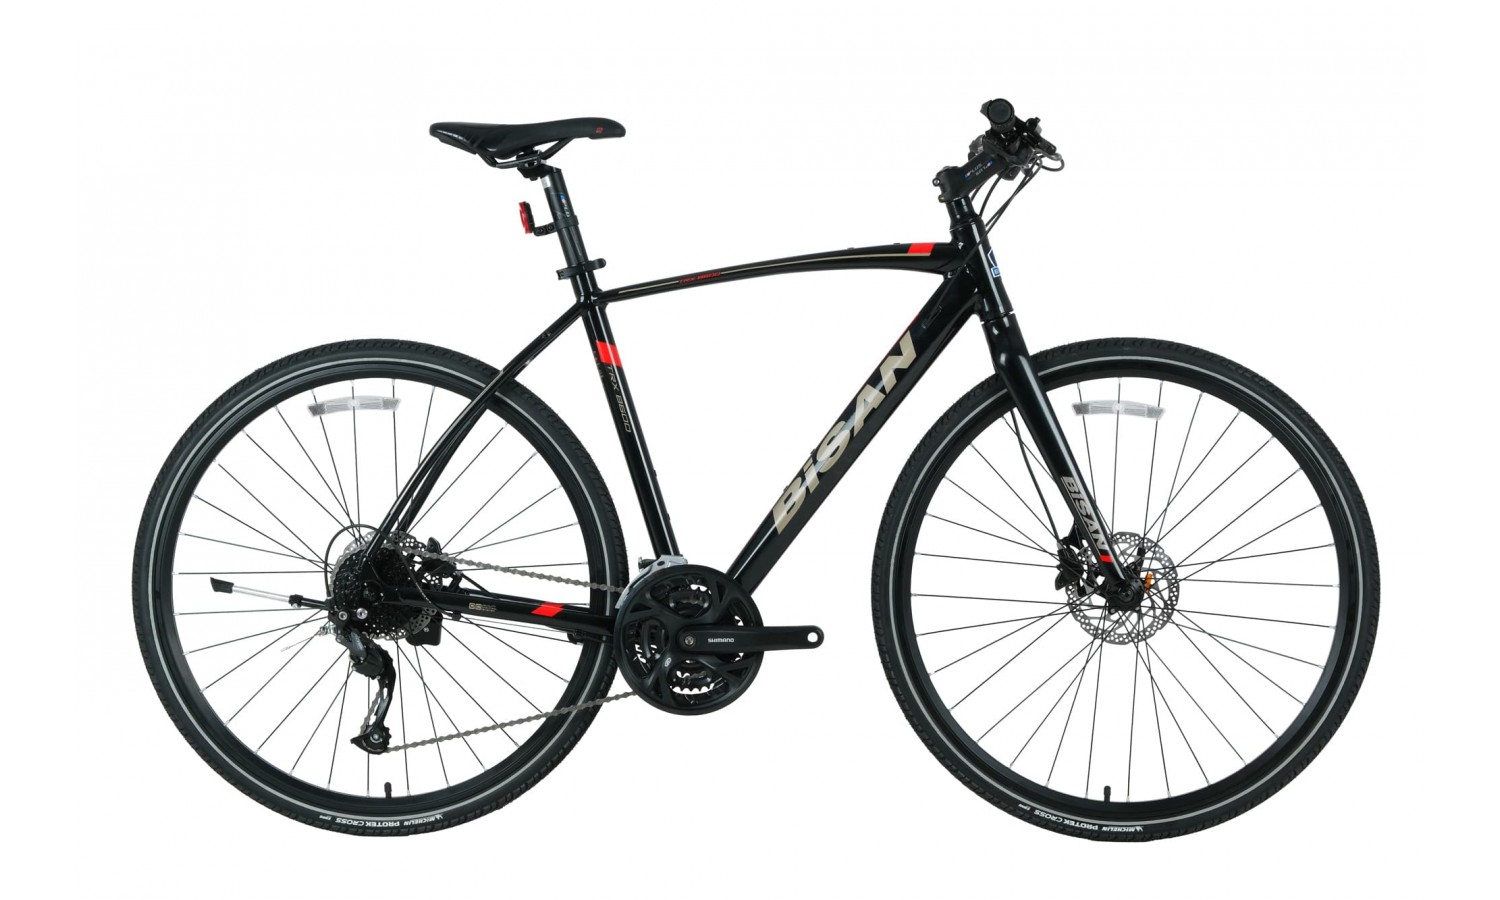 Bisan Trx 8600 28 Hd Trekking Bisiklet Altus (Siyah-Kırmızı)